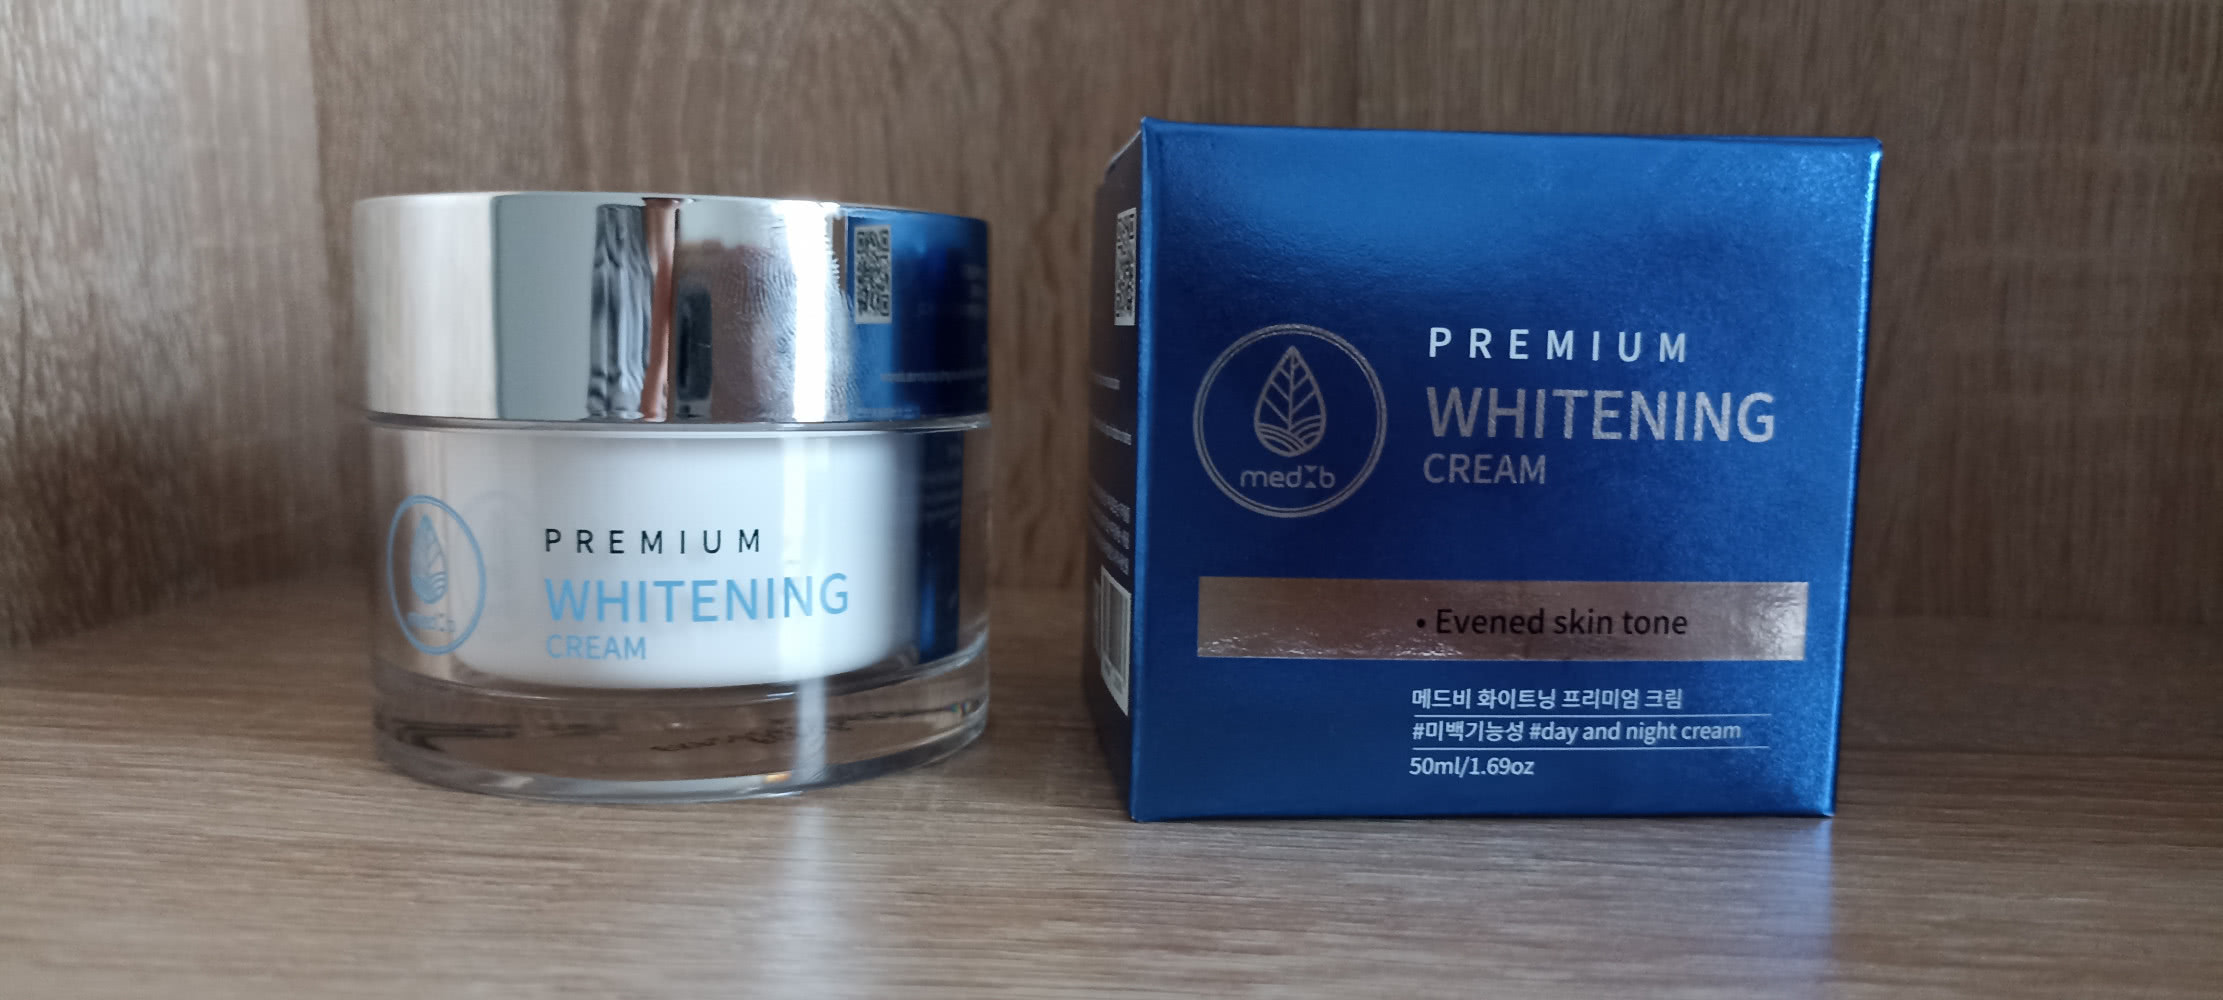 MEDB whitening premium cream питательный крем для лица выравнивающий тон кожи